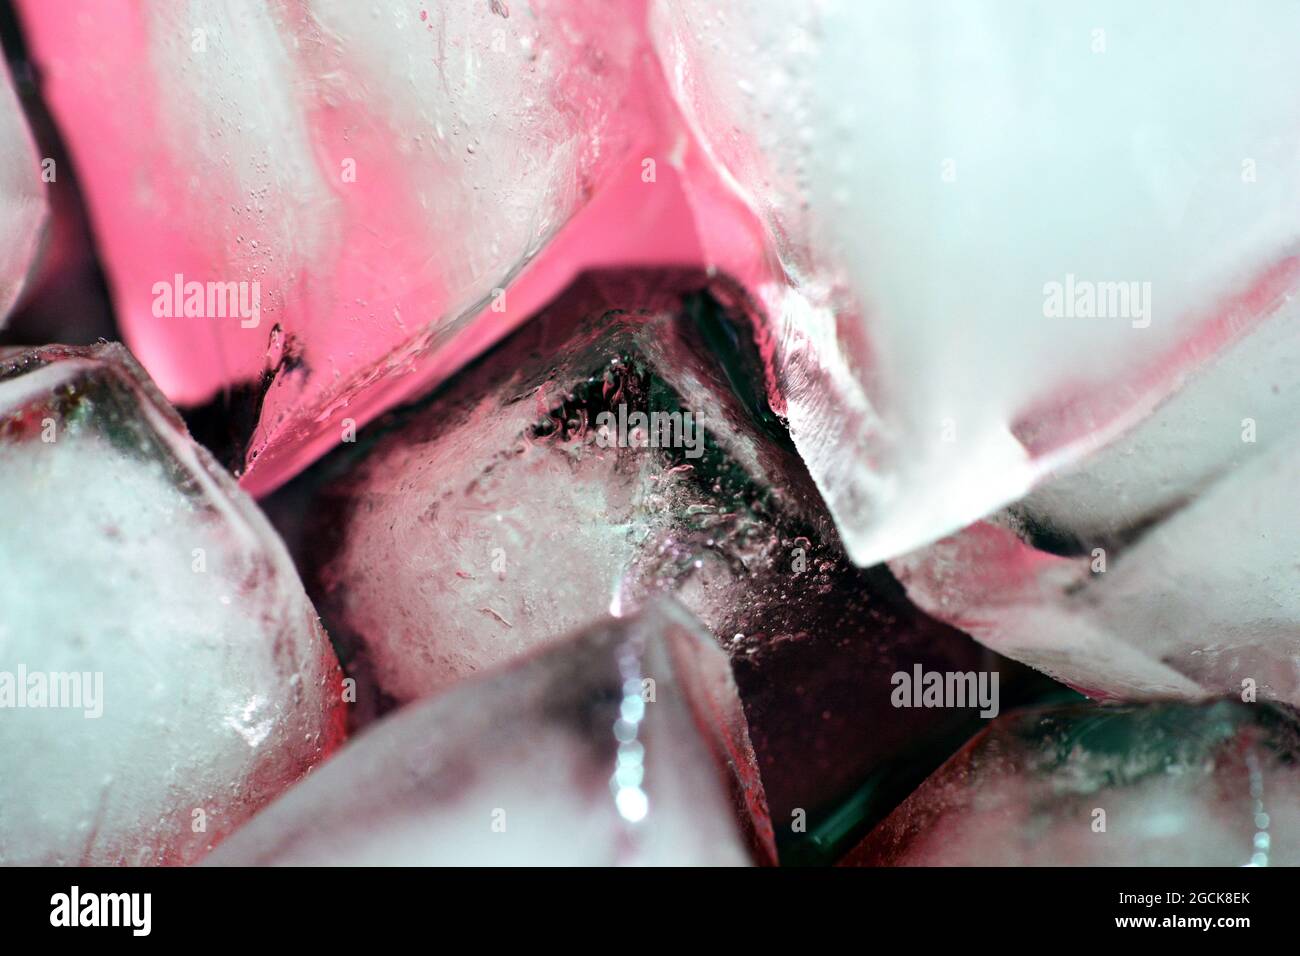 Une vue rapprochée de cubes de glace en fusion clairs et naturels, des cubes de glace réalistes qui bloquent la composition en arrière-plan, Banque D'Images